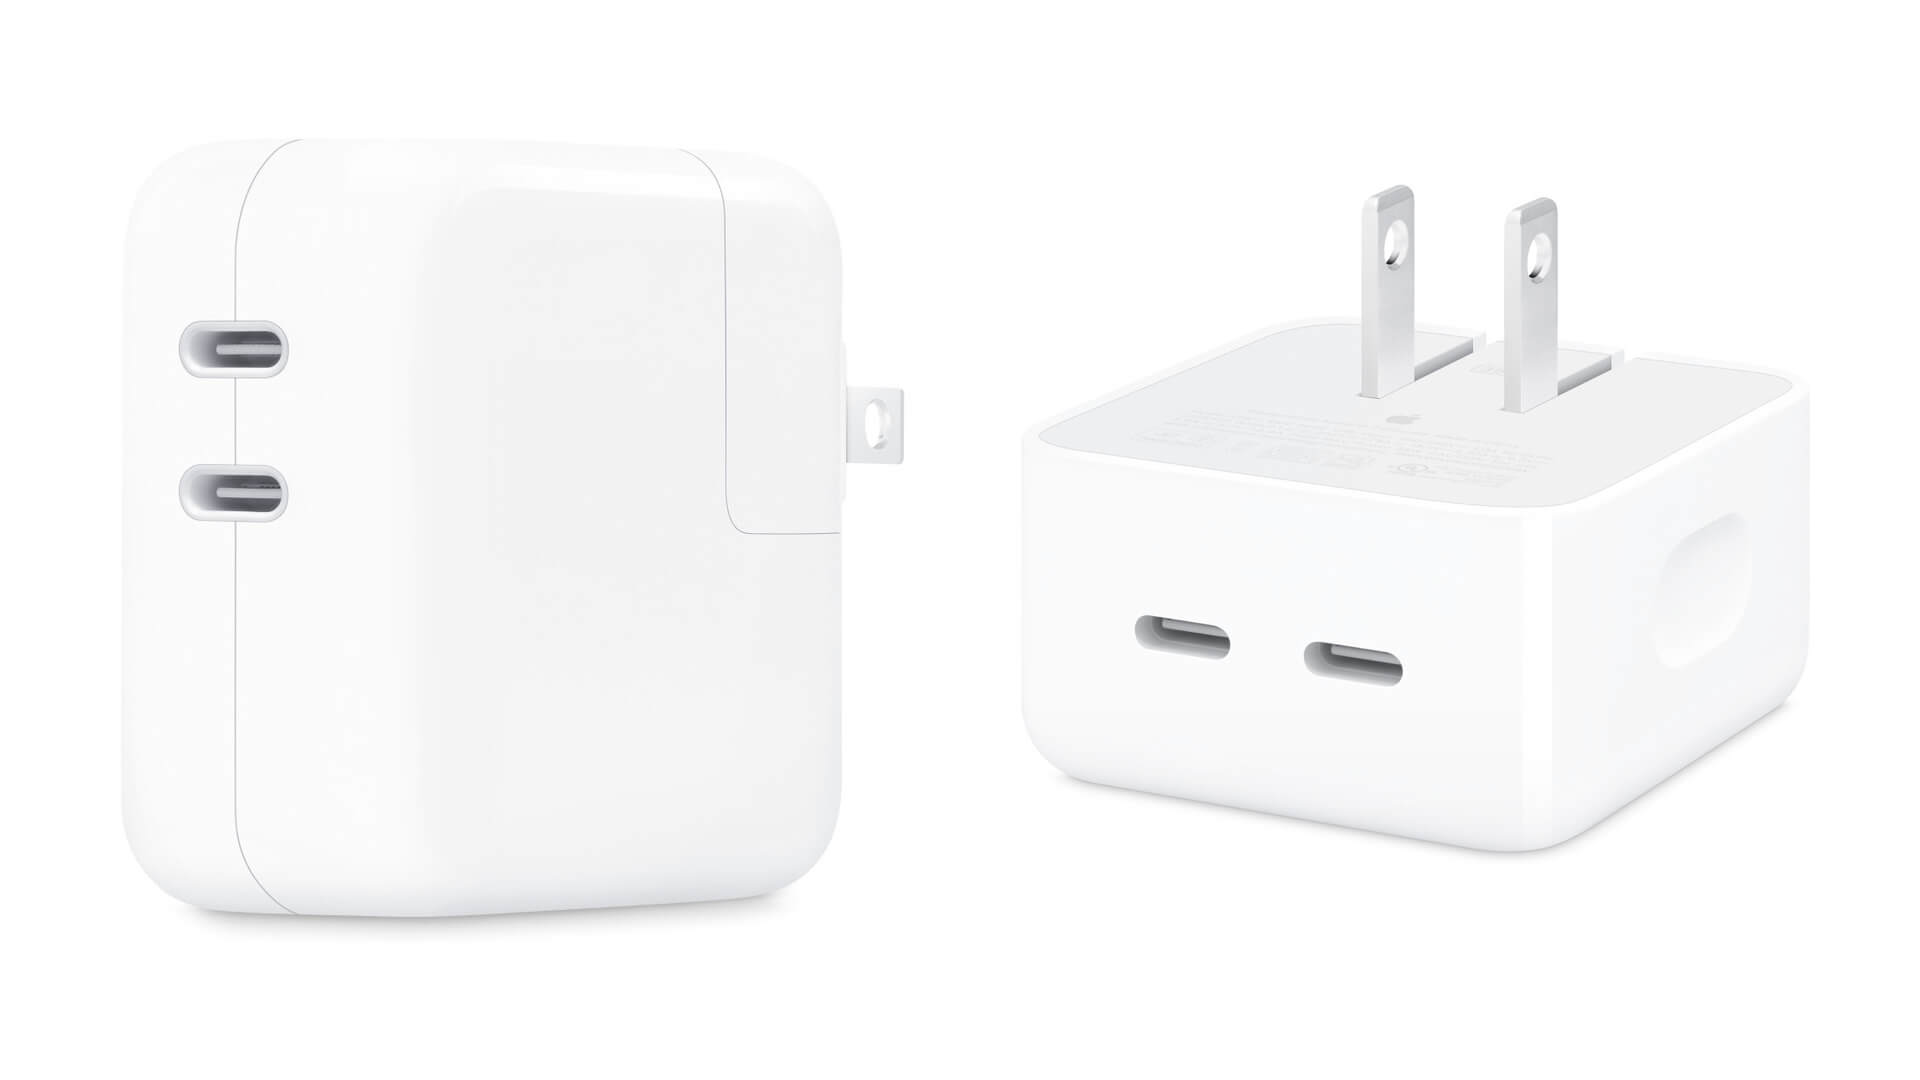 Apple выпустила зарядку с двумя портами USB Type-C